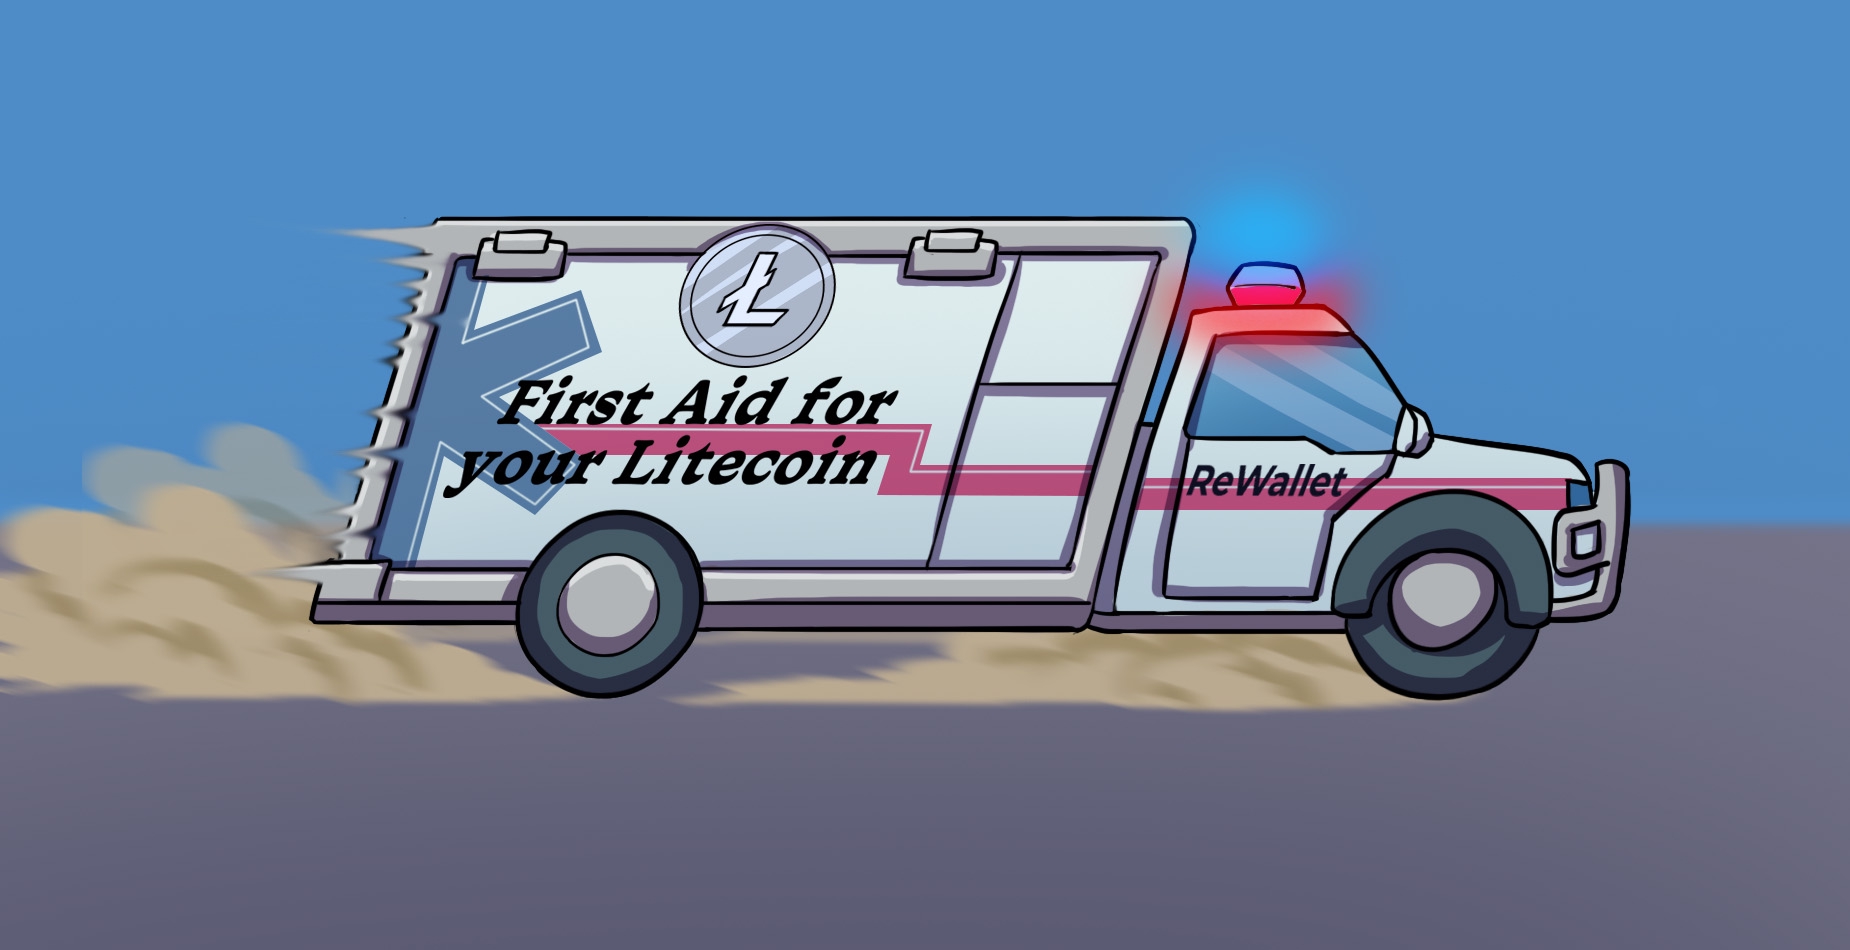 Une ambulance avec l'inscription 'First Aid for your Litecoin', en mouvement rapide avec les sirènes allumées.